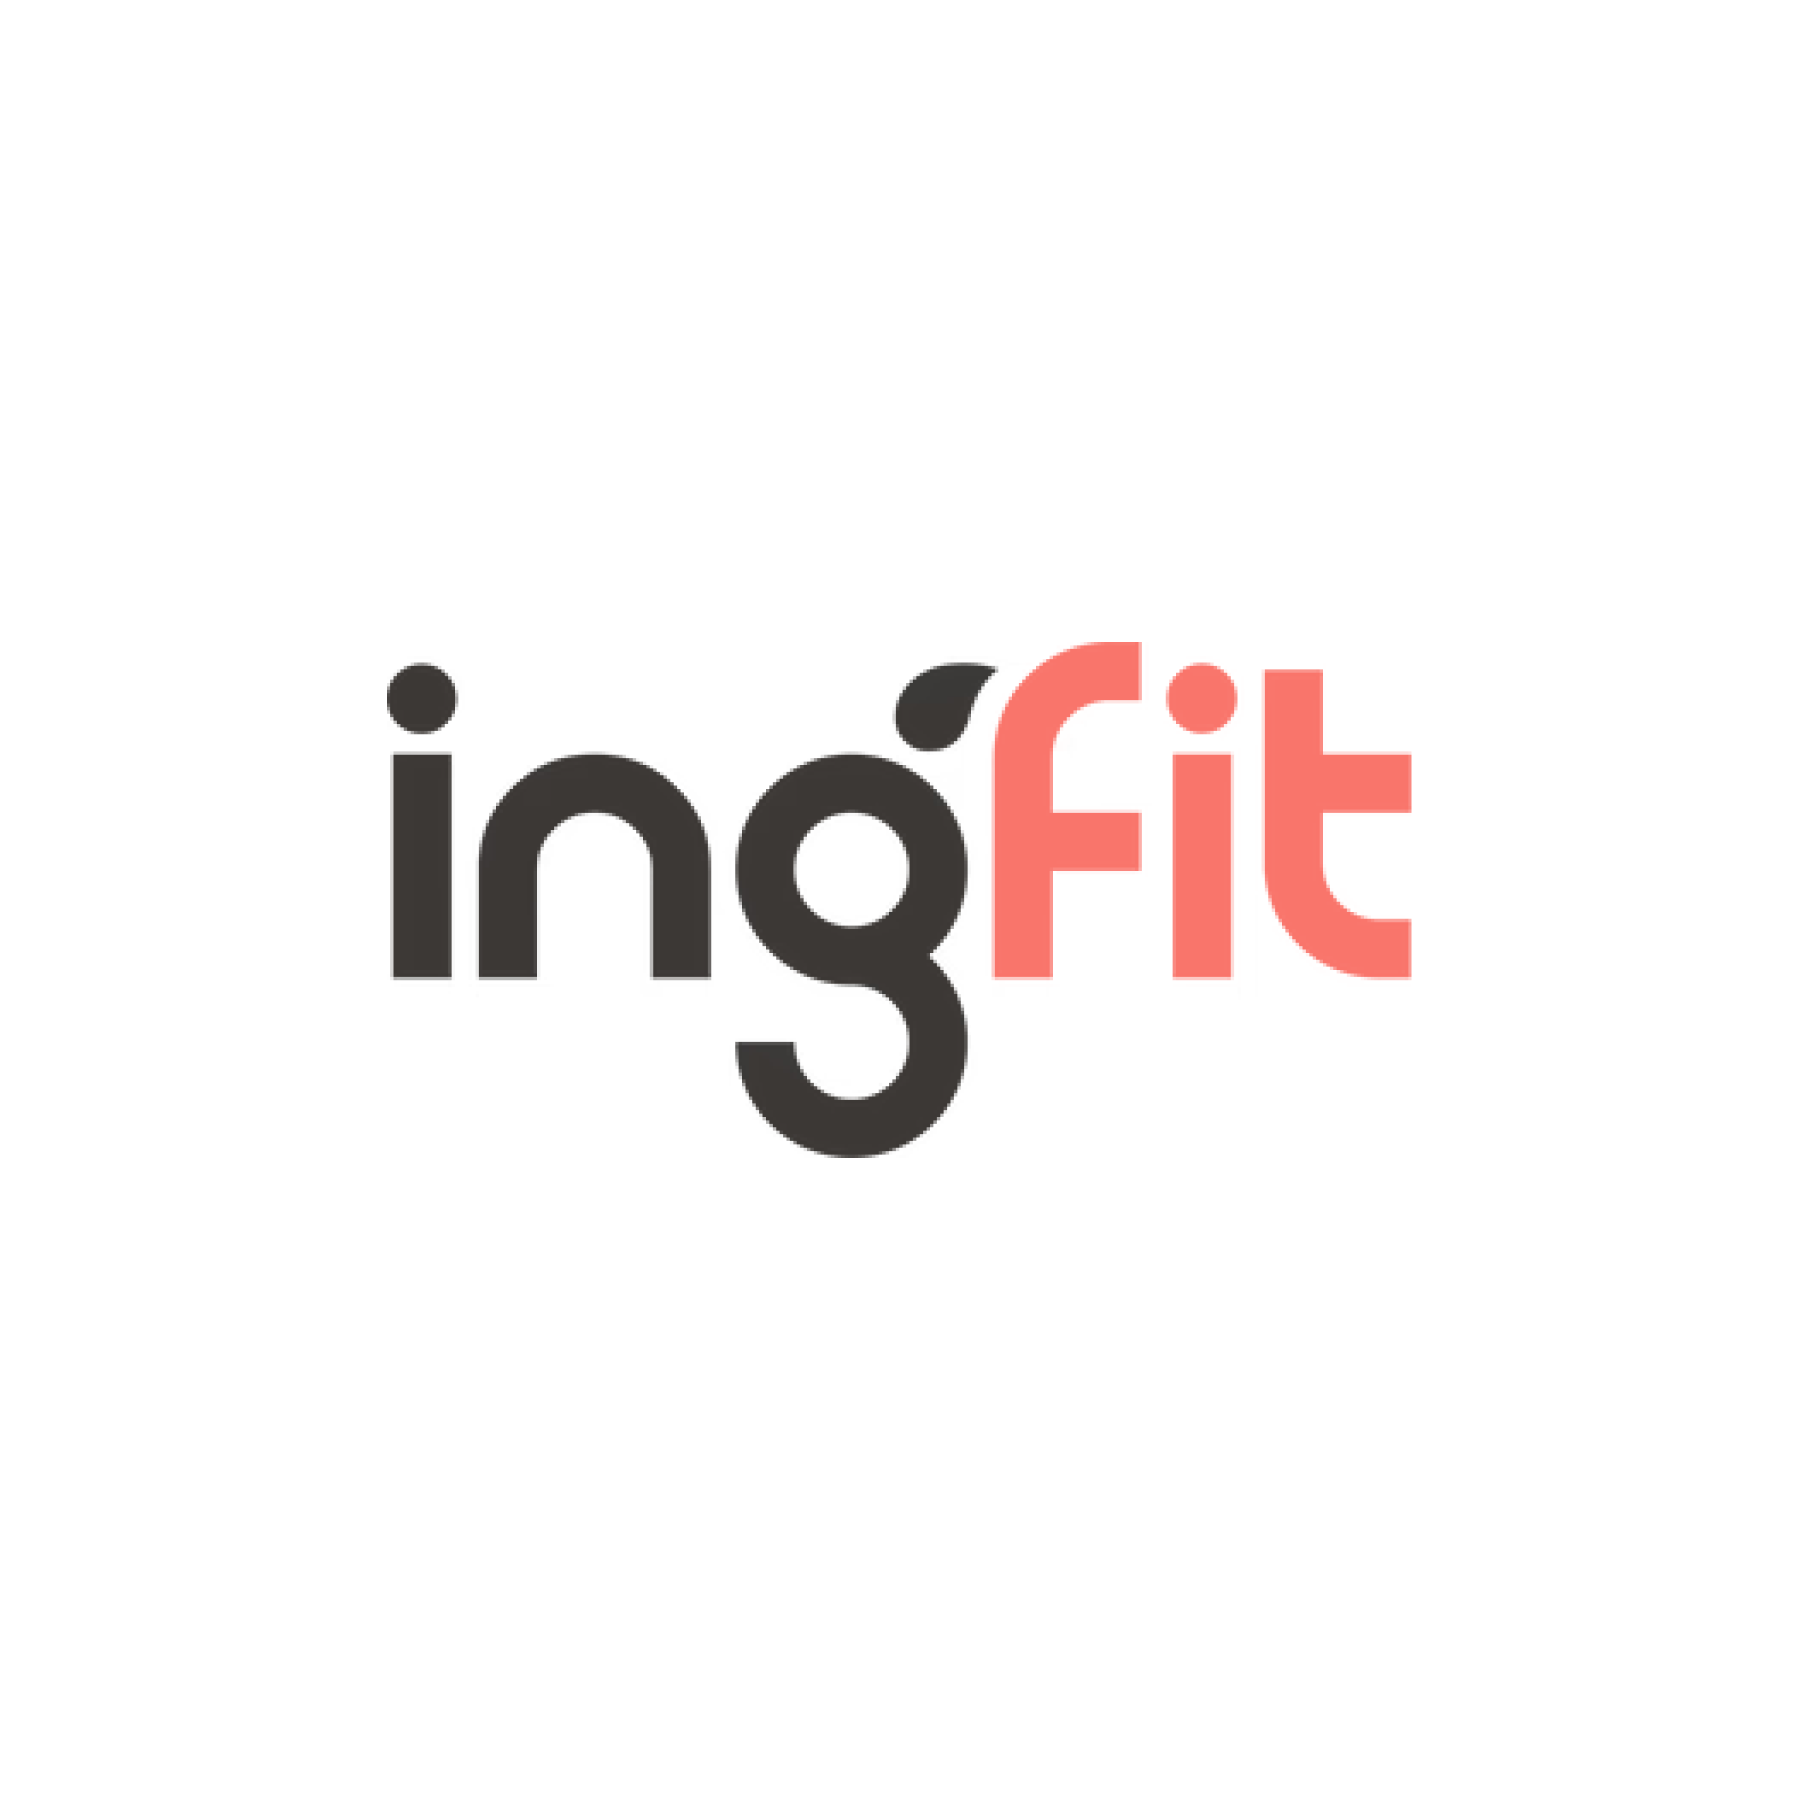 Ingfit logo